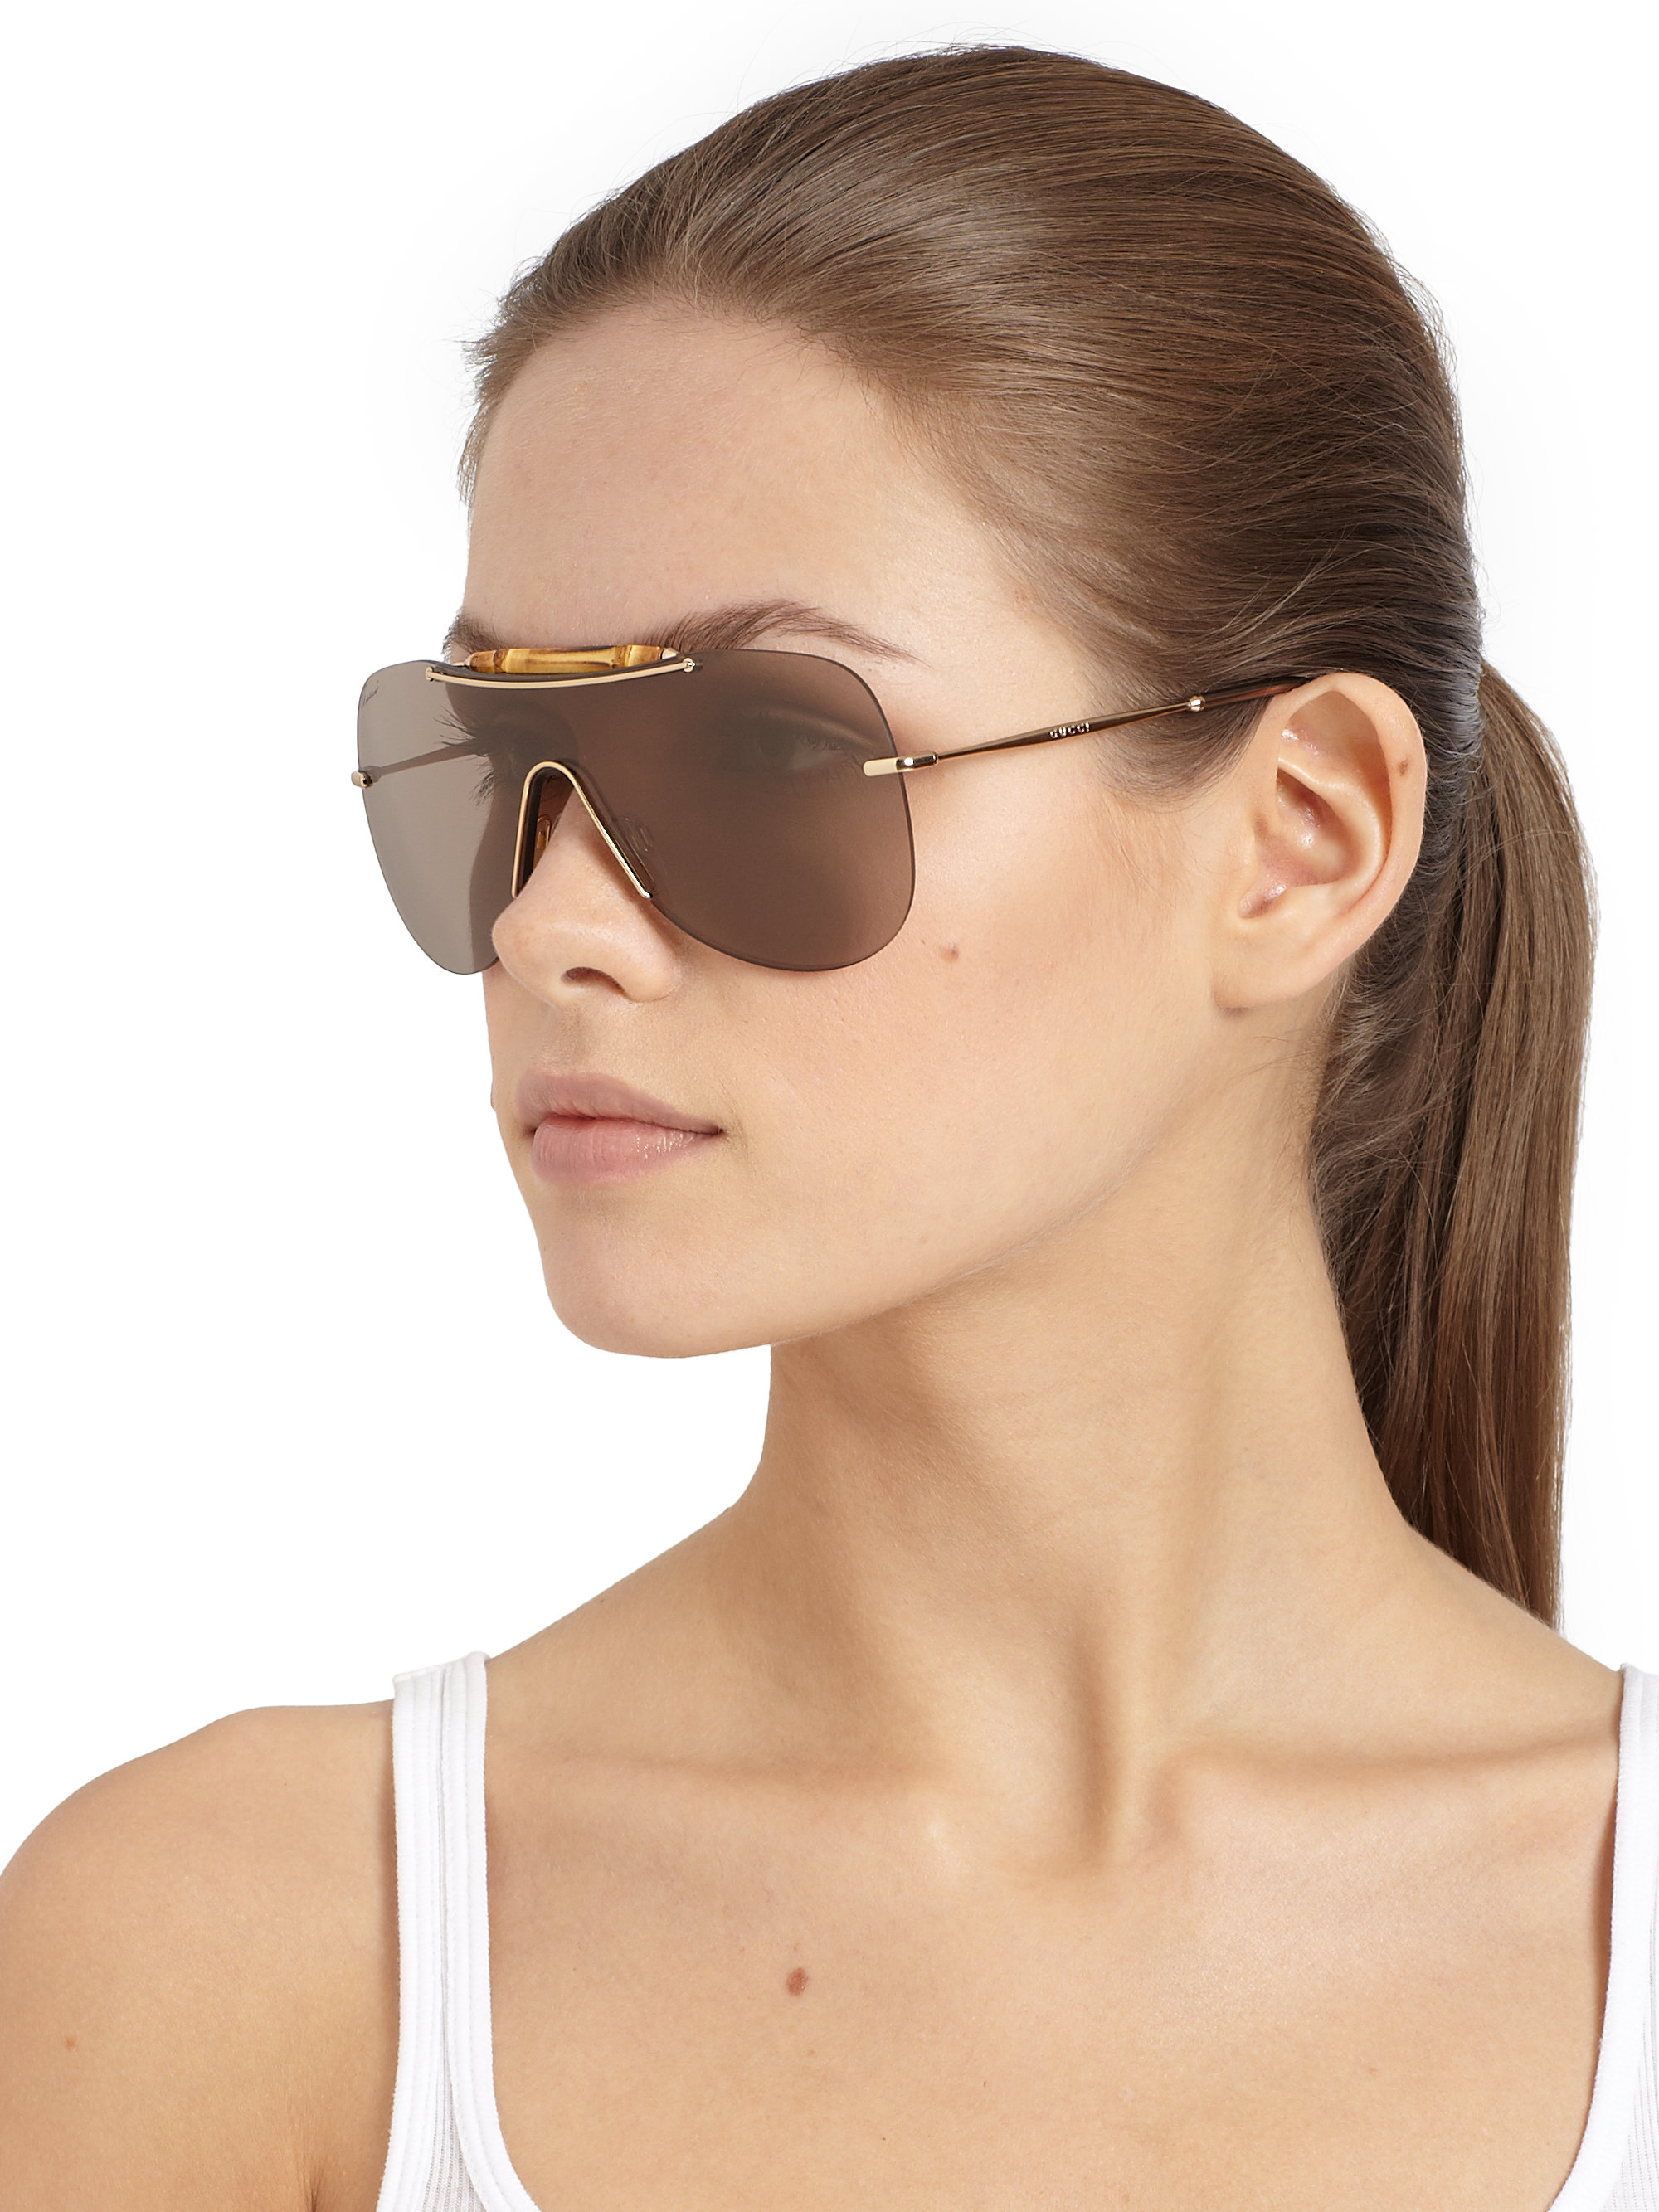 Gucci Bamboo Shield Sunglasses in Gold 